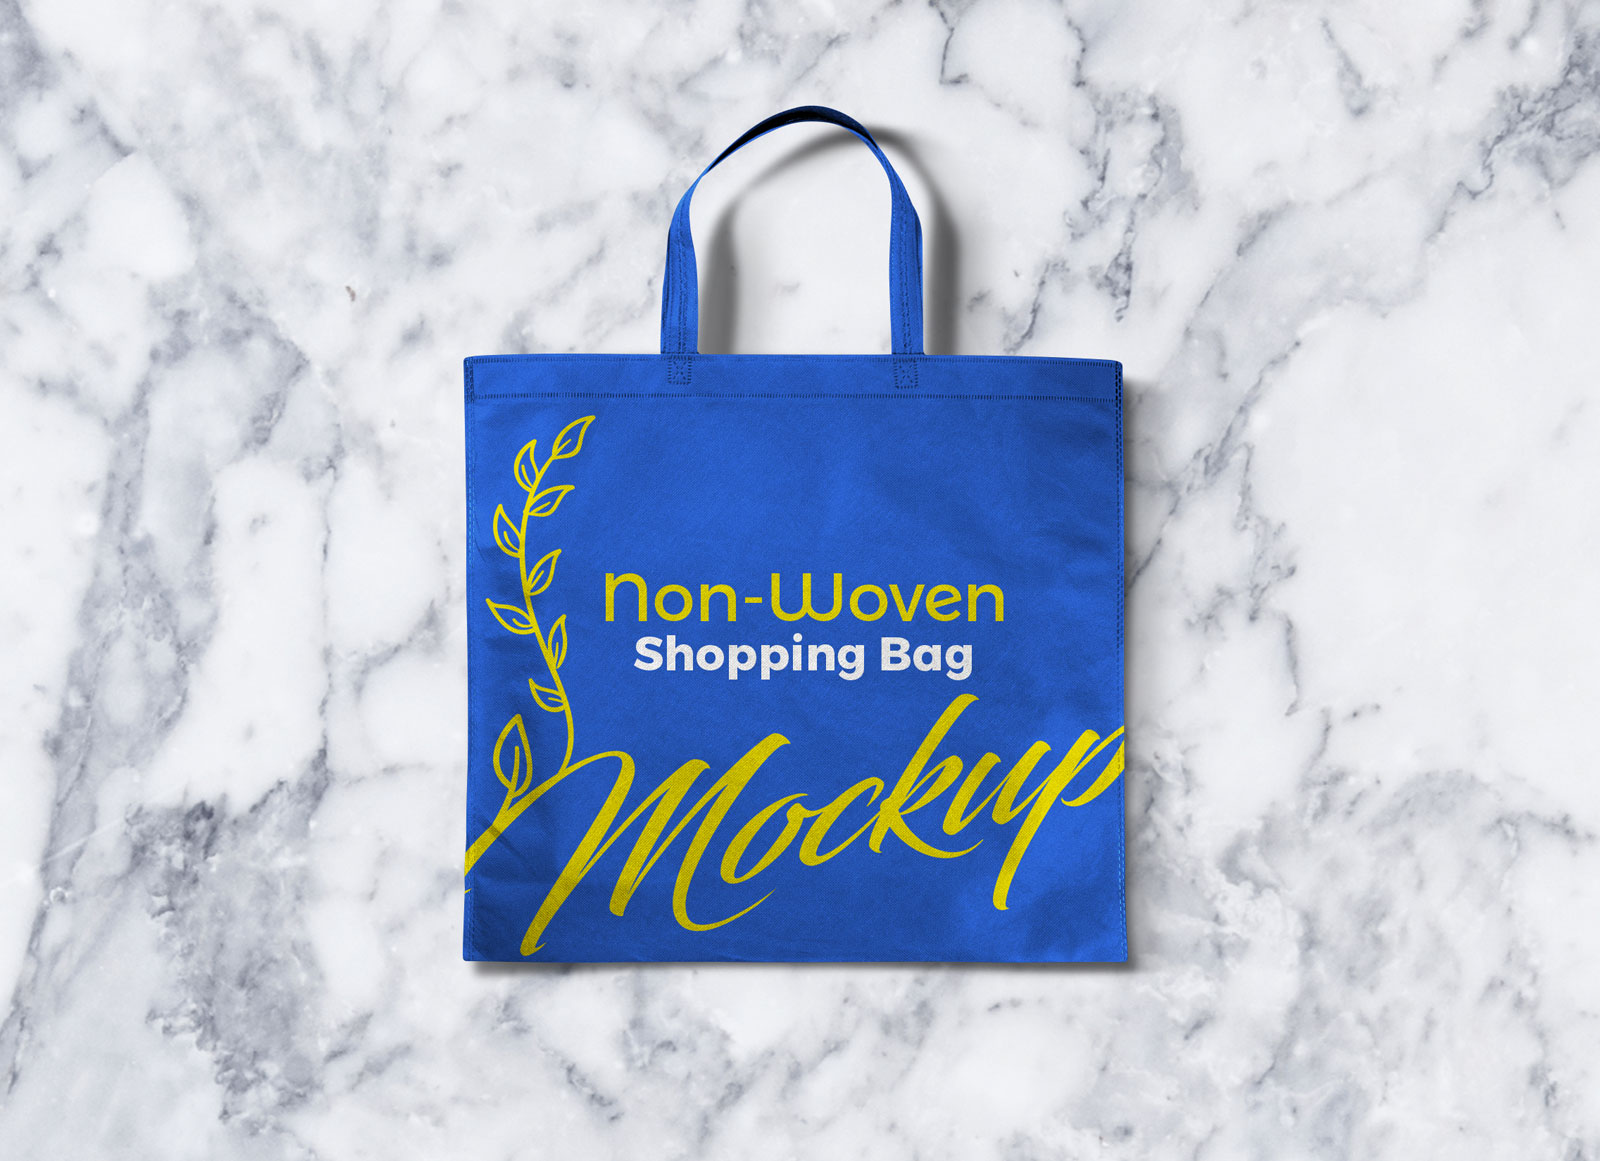 Download Free Non-Woven Shopping Bag Mockup PSD - Good Mockups